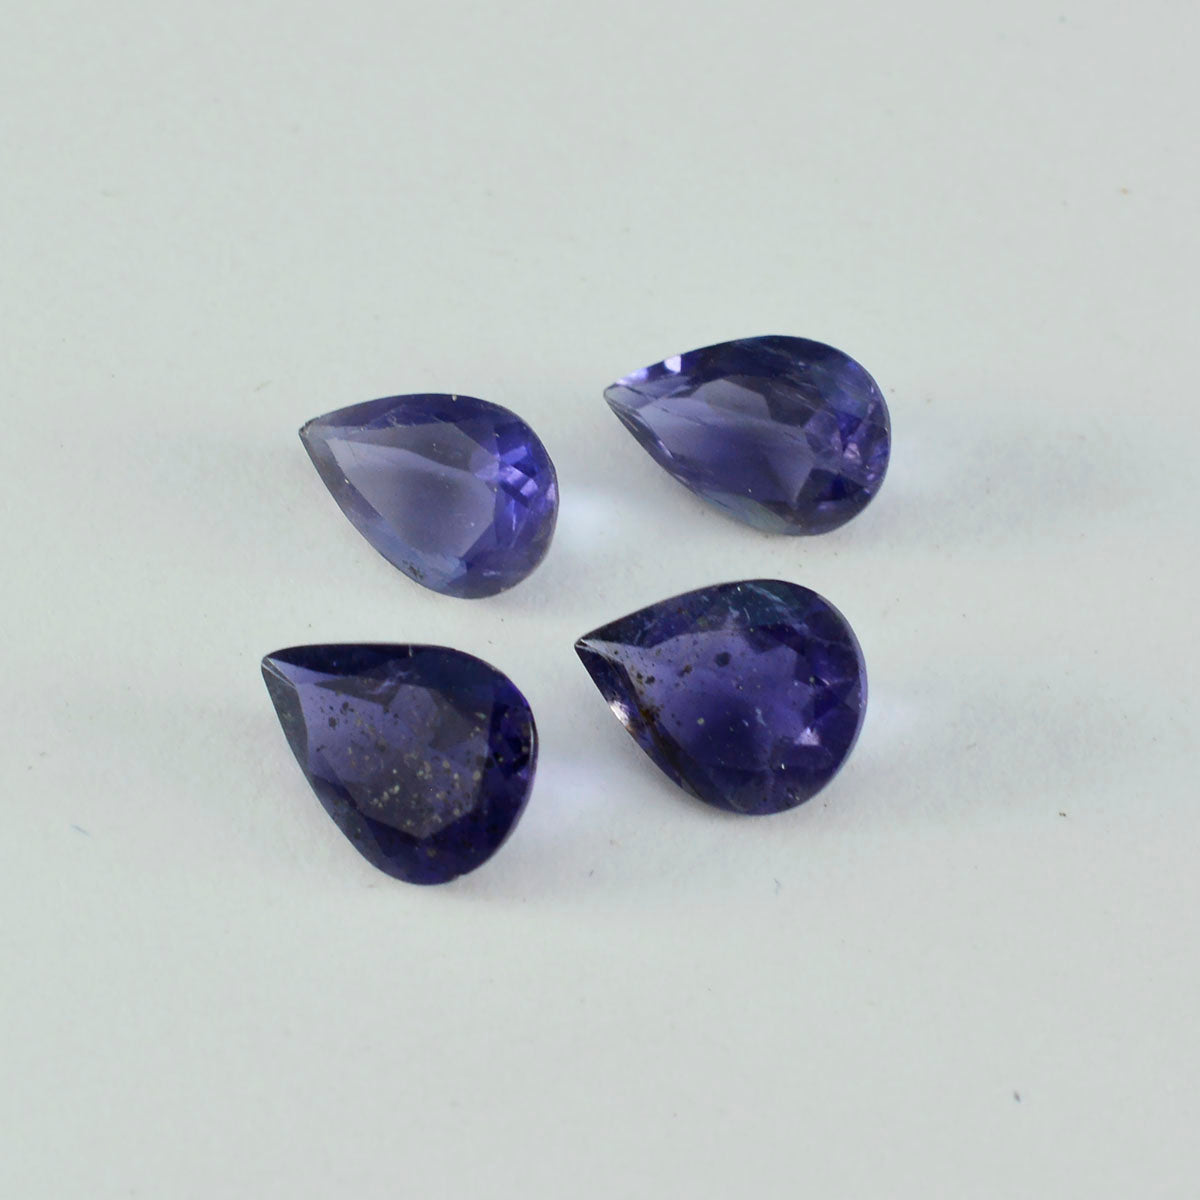 Riyogems 1 pièce d'iolite bleue à facettes 10x14mm en forme de poire, pierre précieuse en vrac de bonne qualité